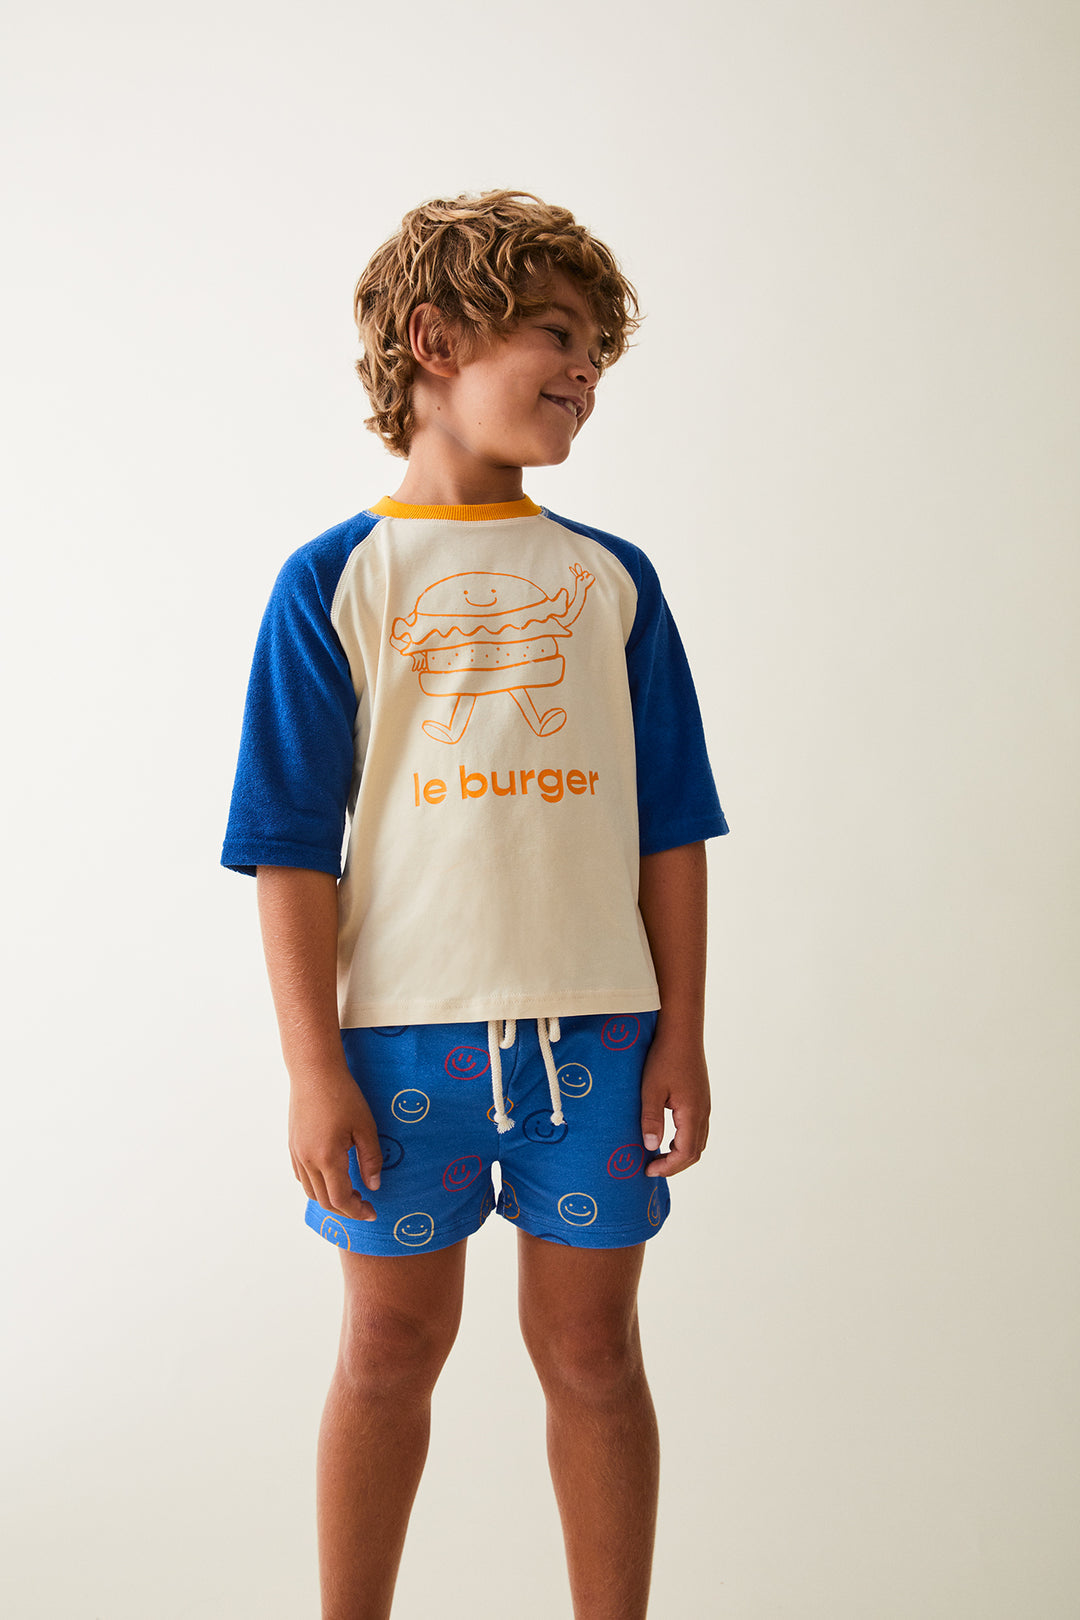 Bluze me menge te shkurtra krem me blu me burger/Cinta-Top -Maison Tadaboum